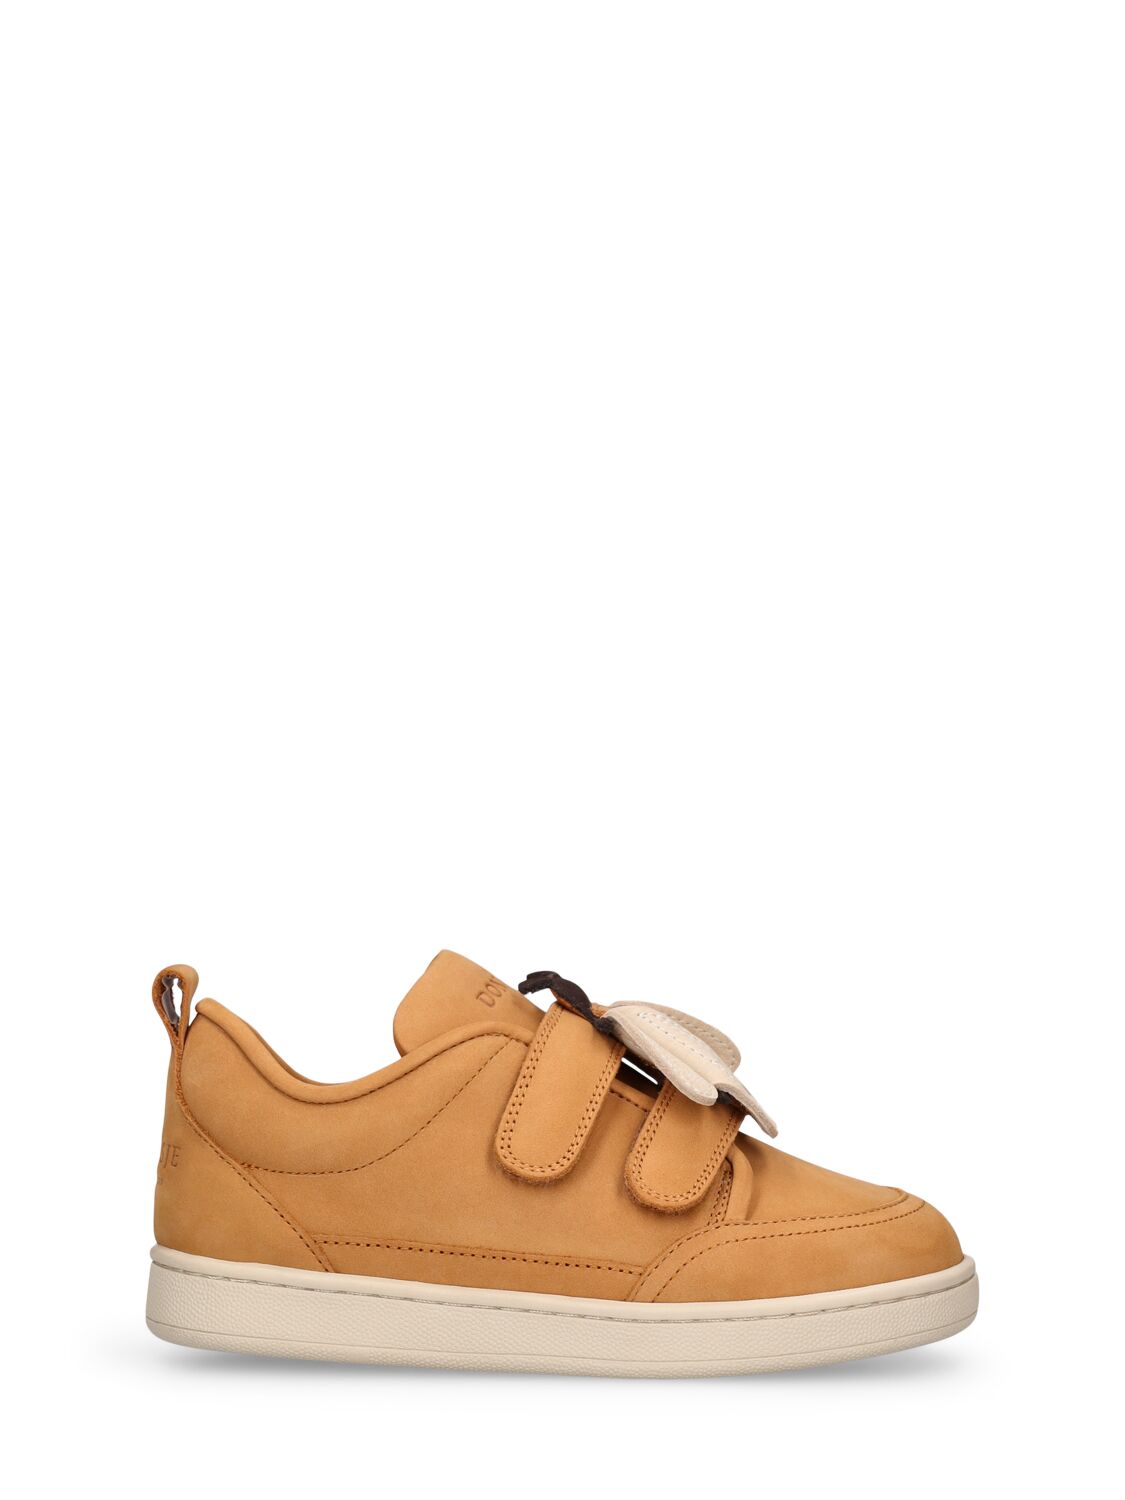 Donsje Kids' Leather Strap Sneakers W/ Bee Patch In Brown